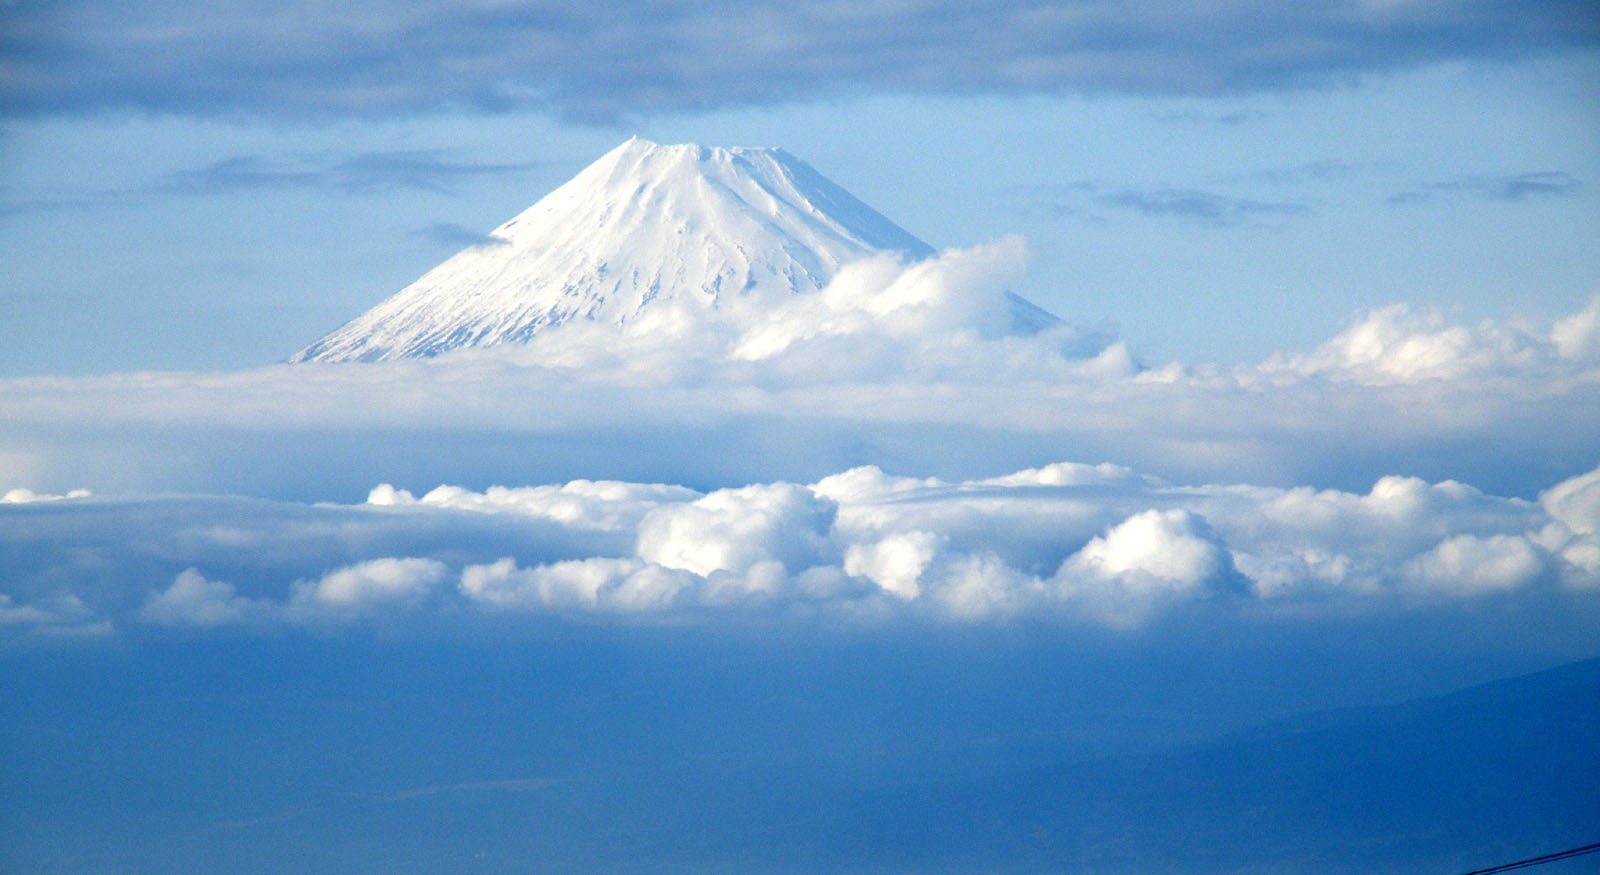 壁紙 富士山の壁紙 世界遺産 1600x875 壁紙 富士山の壁紙 壁紙にしたい程美しい風景画像2 絶景写真 Naver まとめ